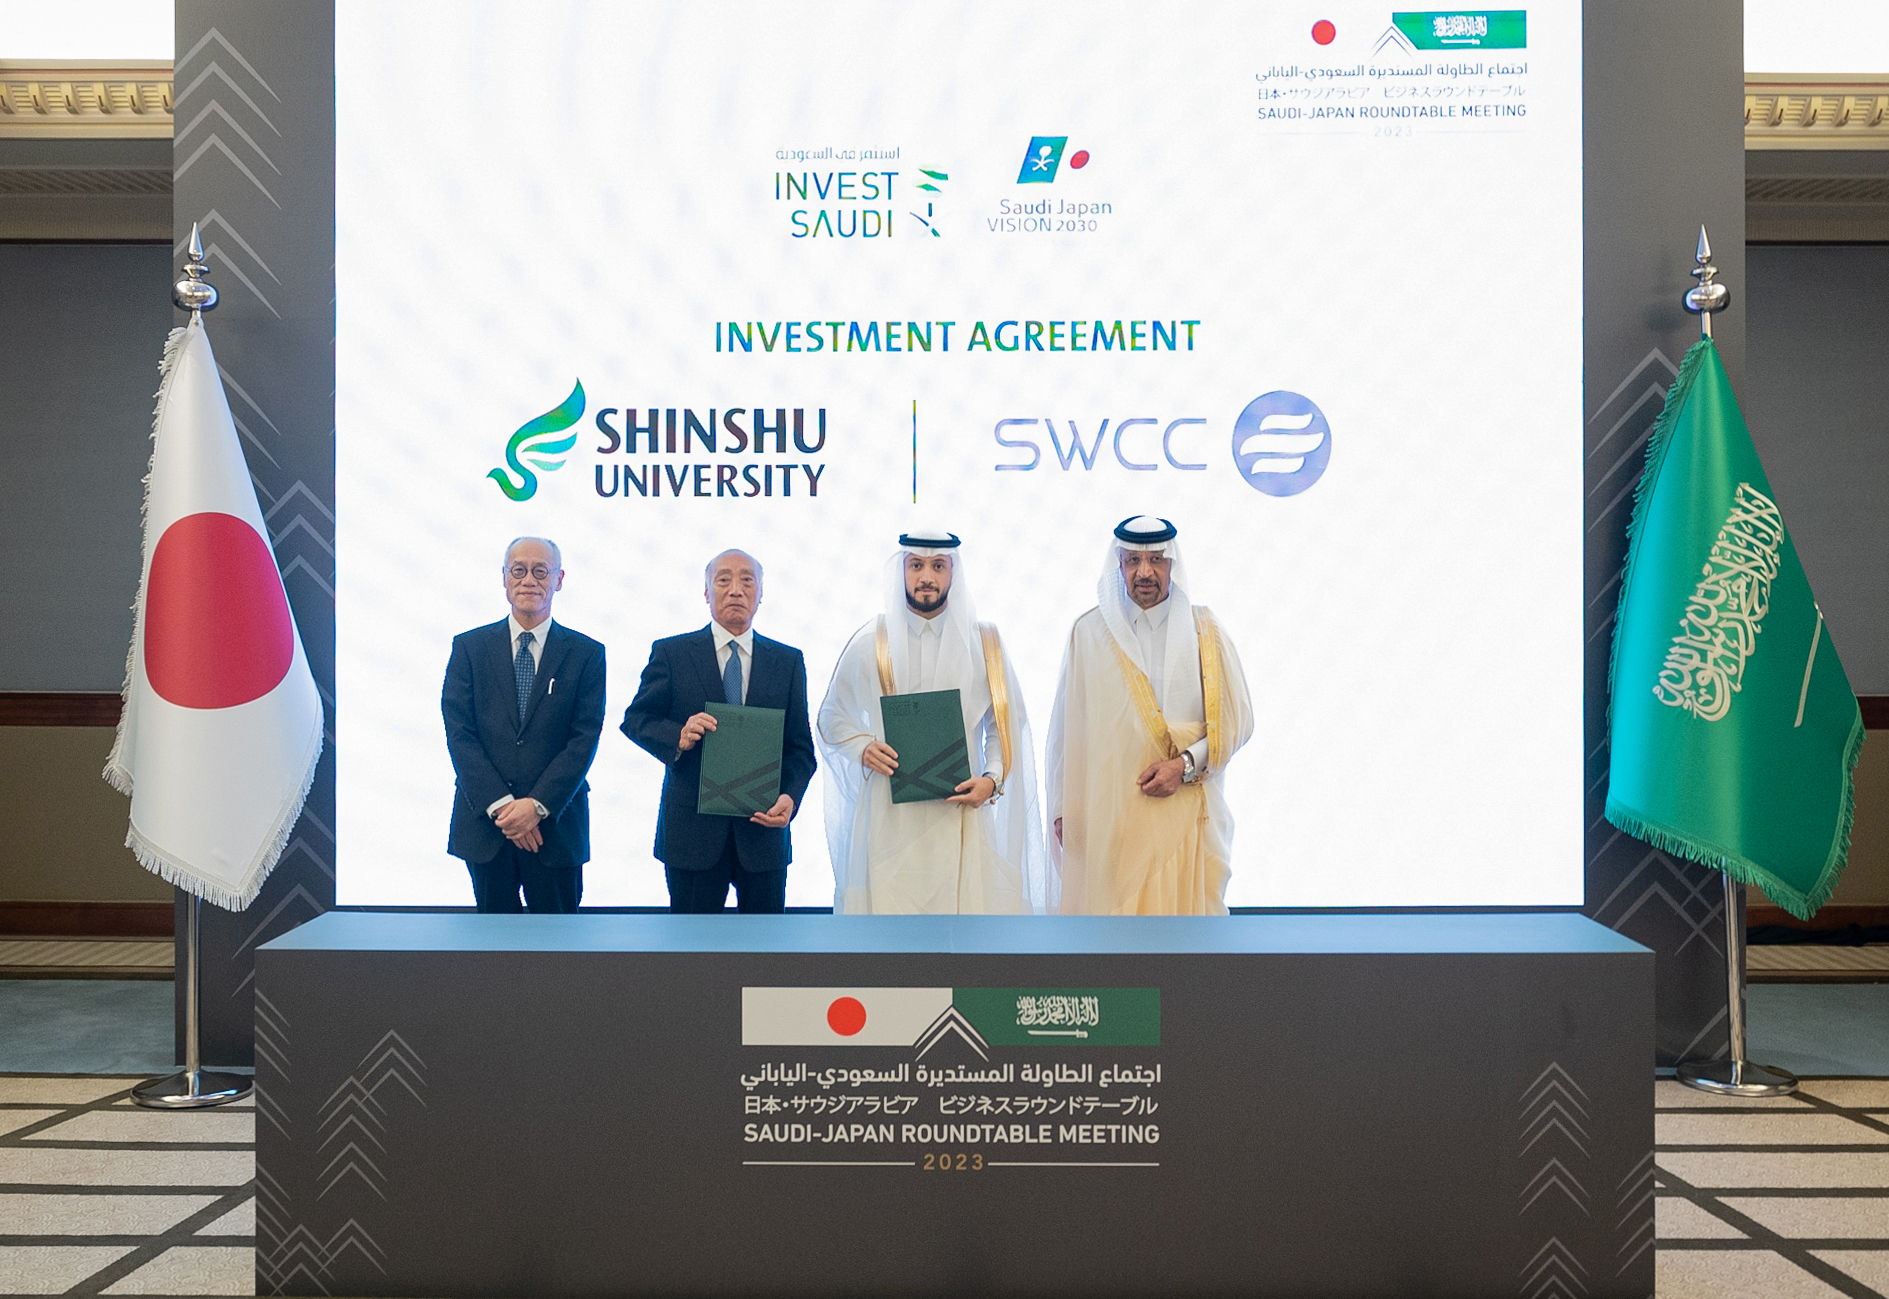 サウジアラビア海水淡水化公社(SWCC)と信州大学とのMOUを締結